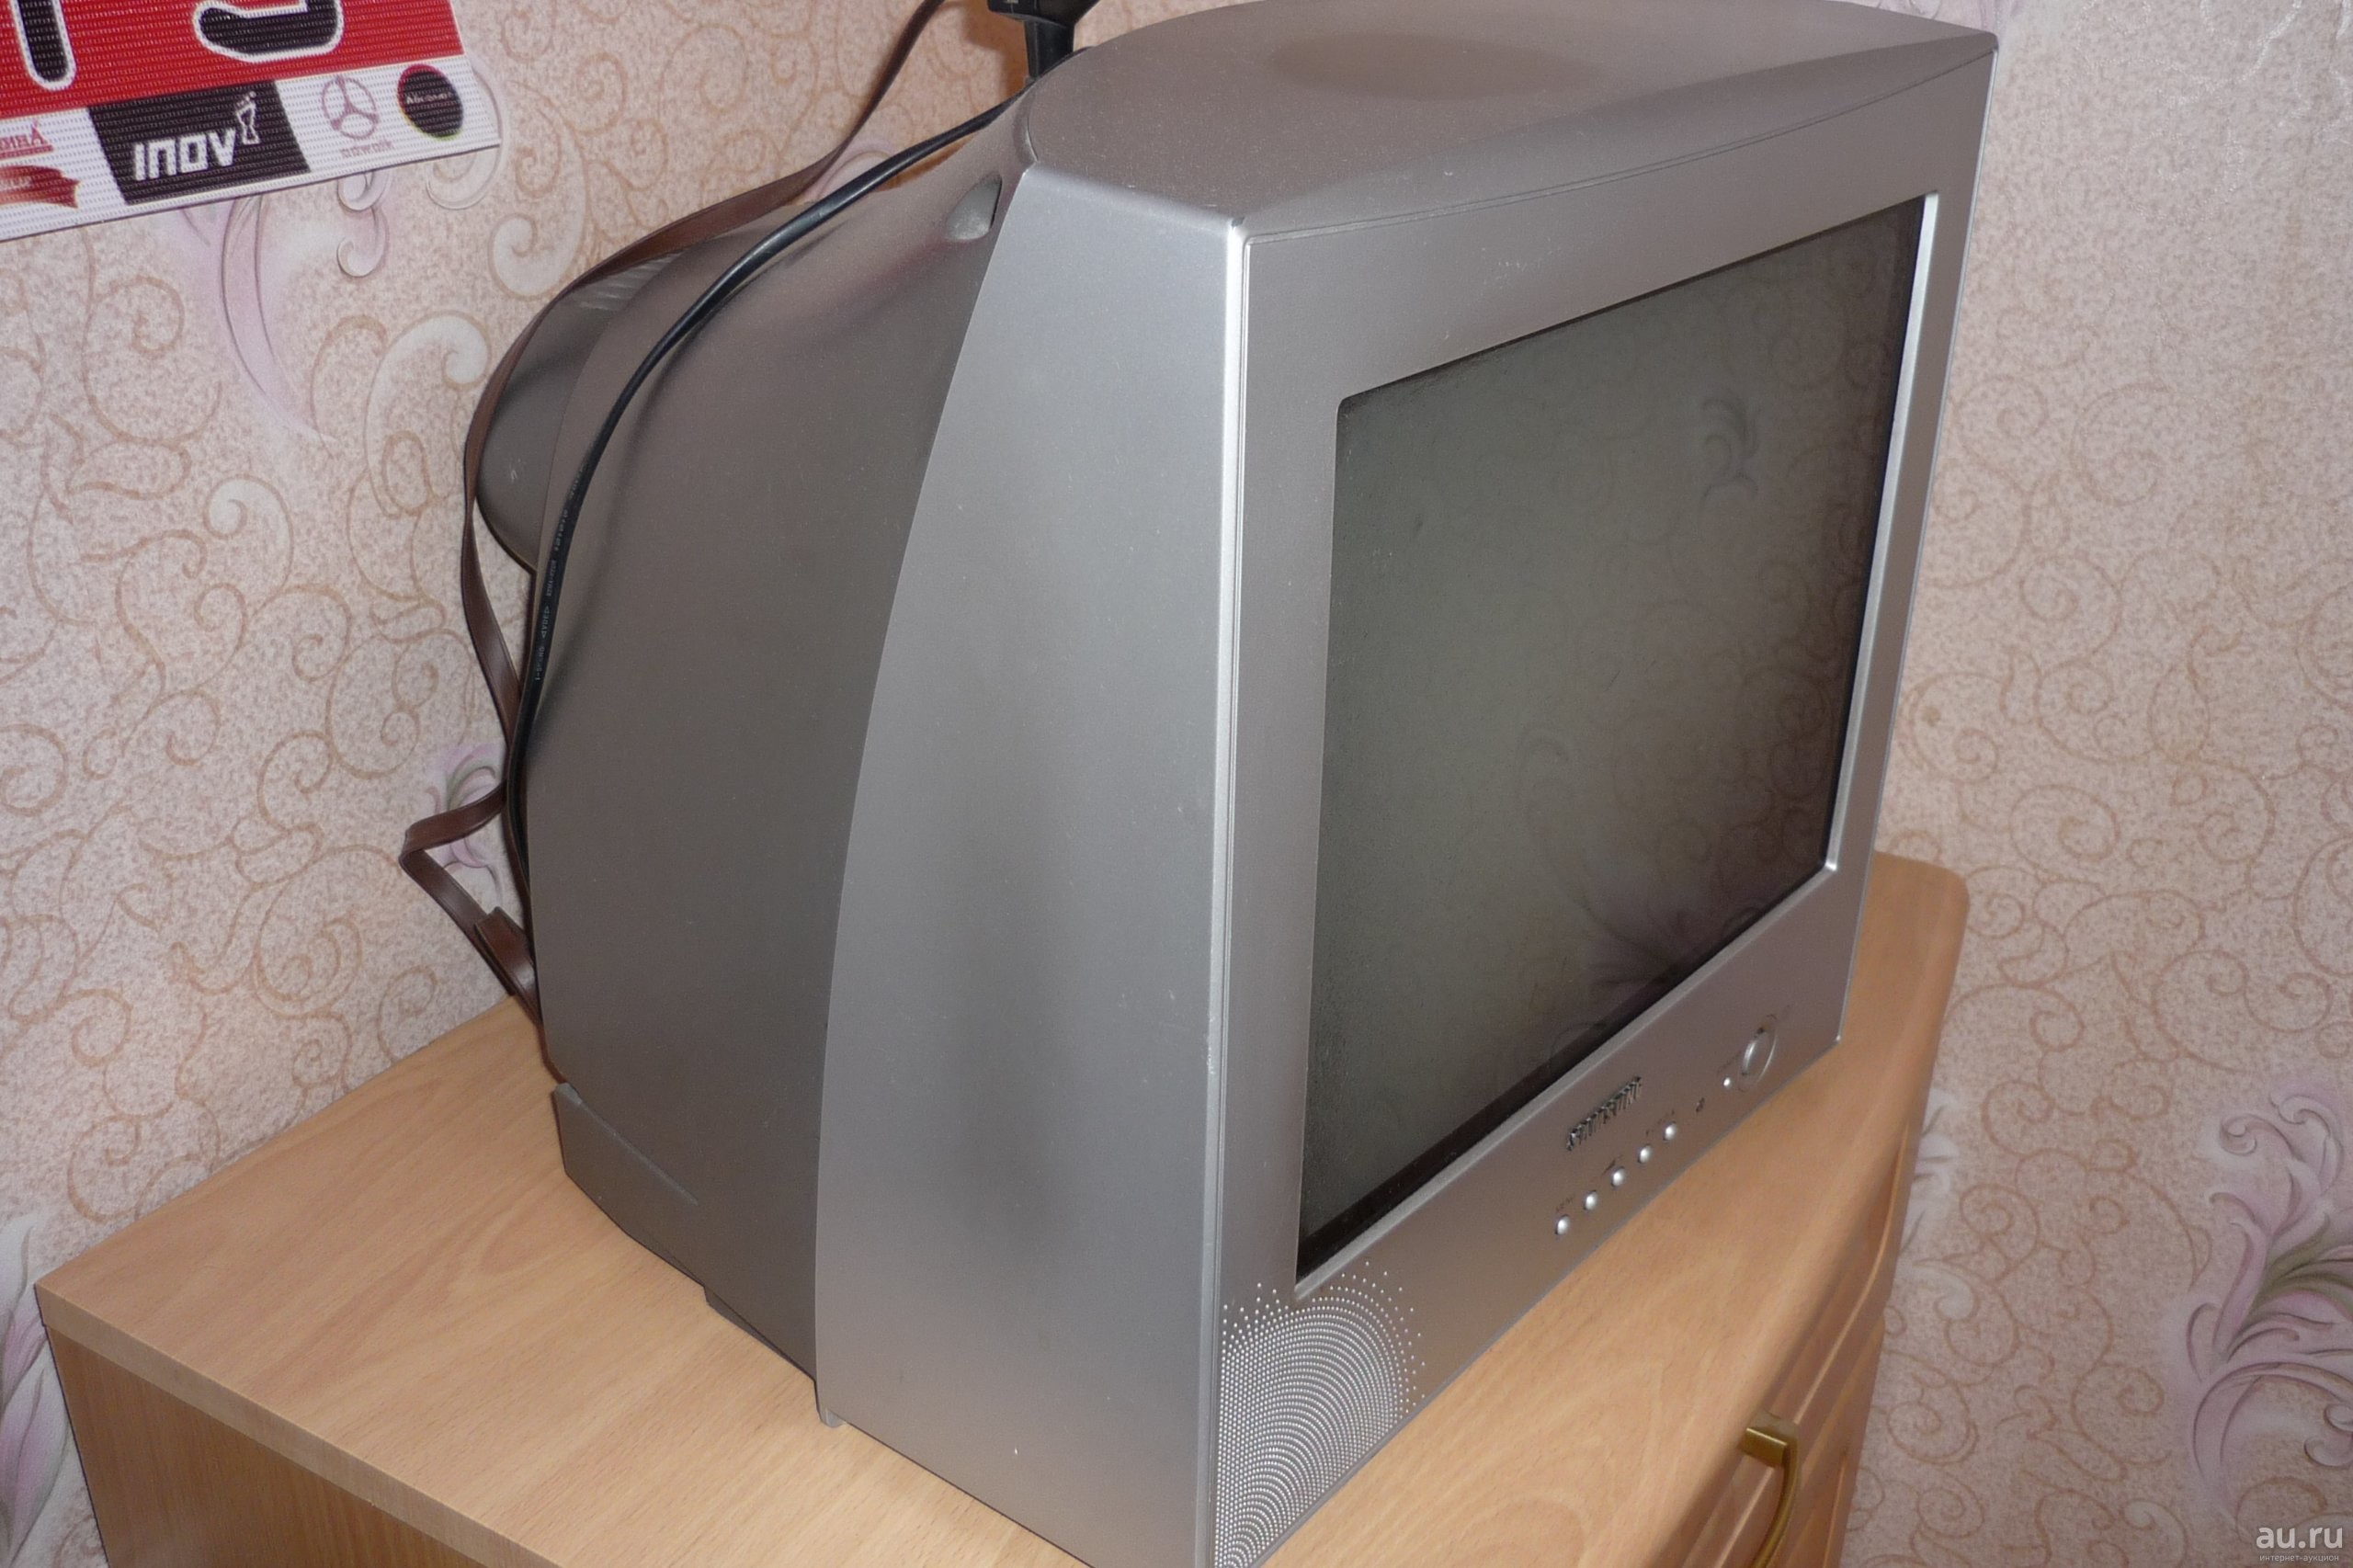 Телевизор 65 авито. Телевизор самсунг старый кинескопный. Samsung 21 дюйм кинескопный. Телевизор Sharp ЭЛТ 21 дюйм. ЭЛТ телевизор Sharp 21 дюймов.